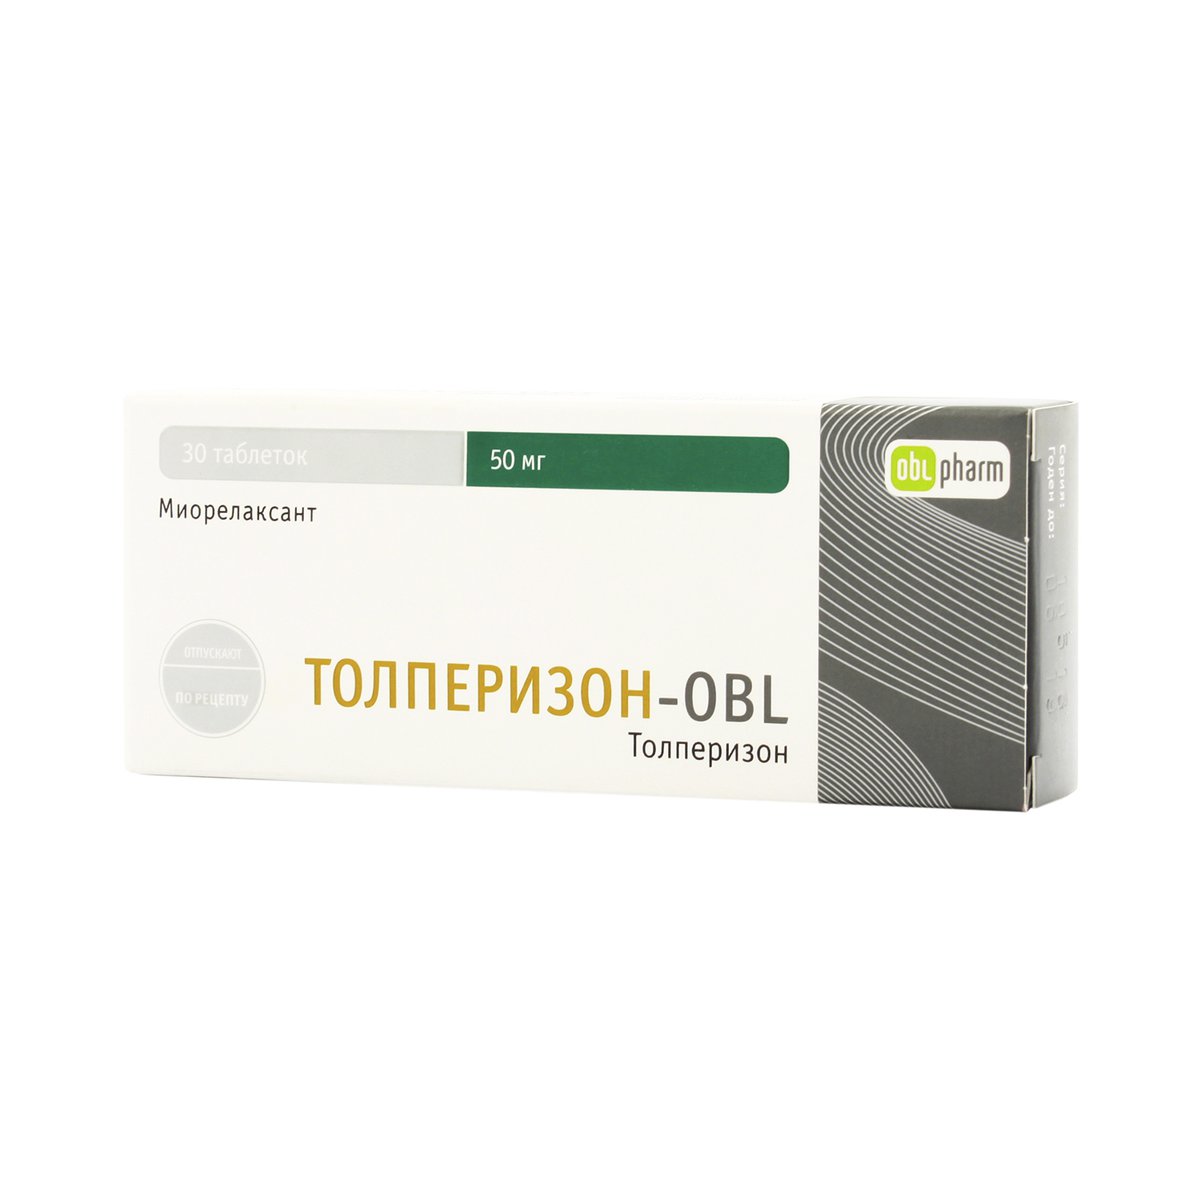 Толперизон-obl (таблетки, 30 шт, 50 мг) - цена,  онлайн  .